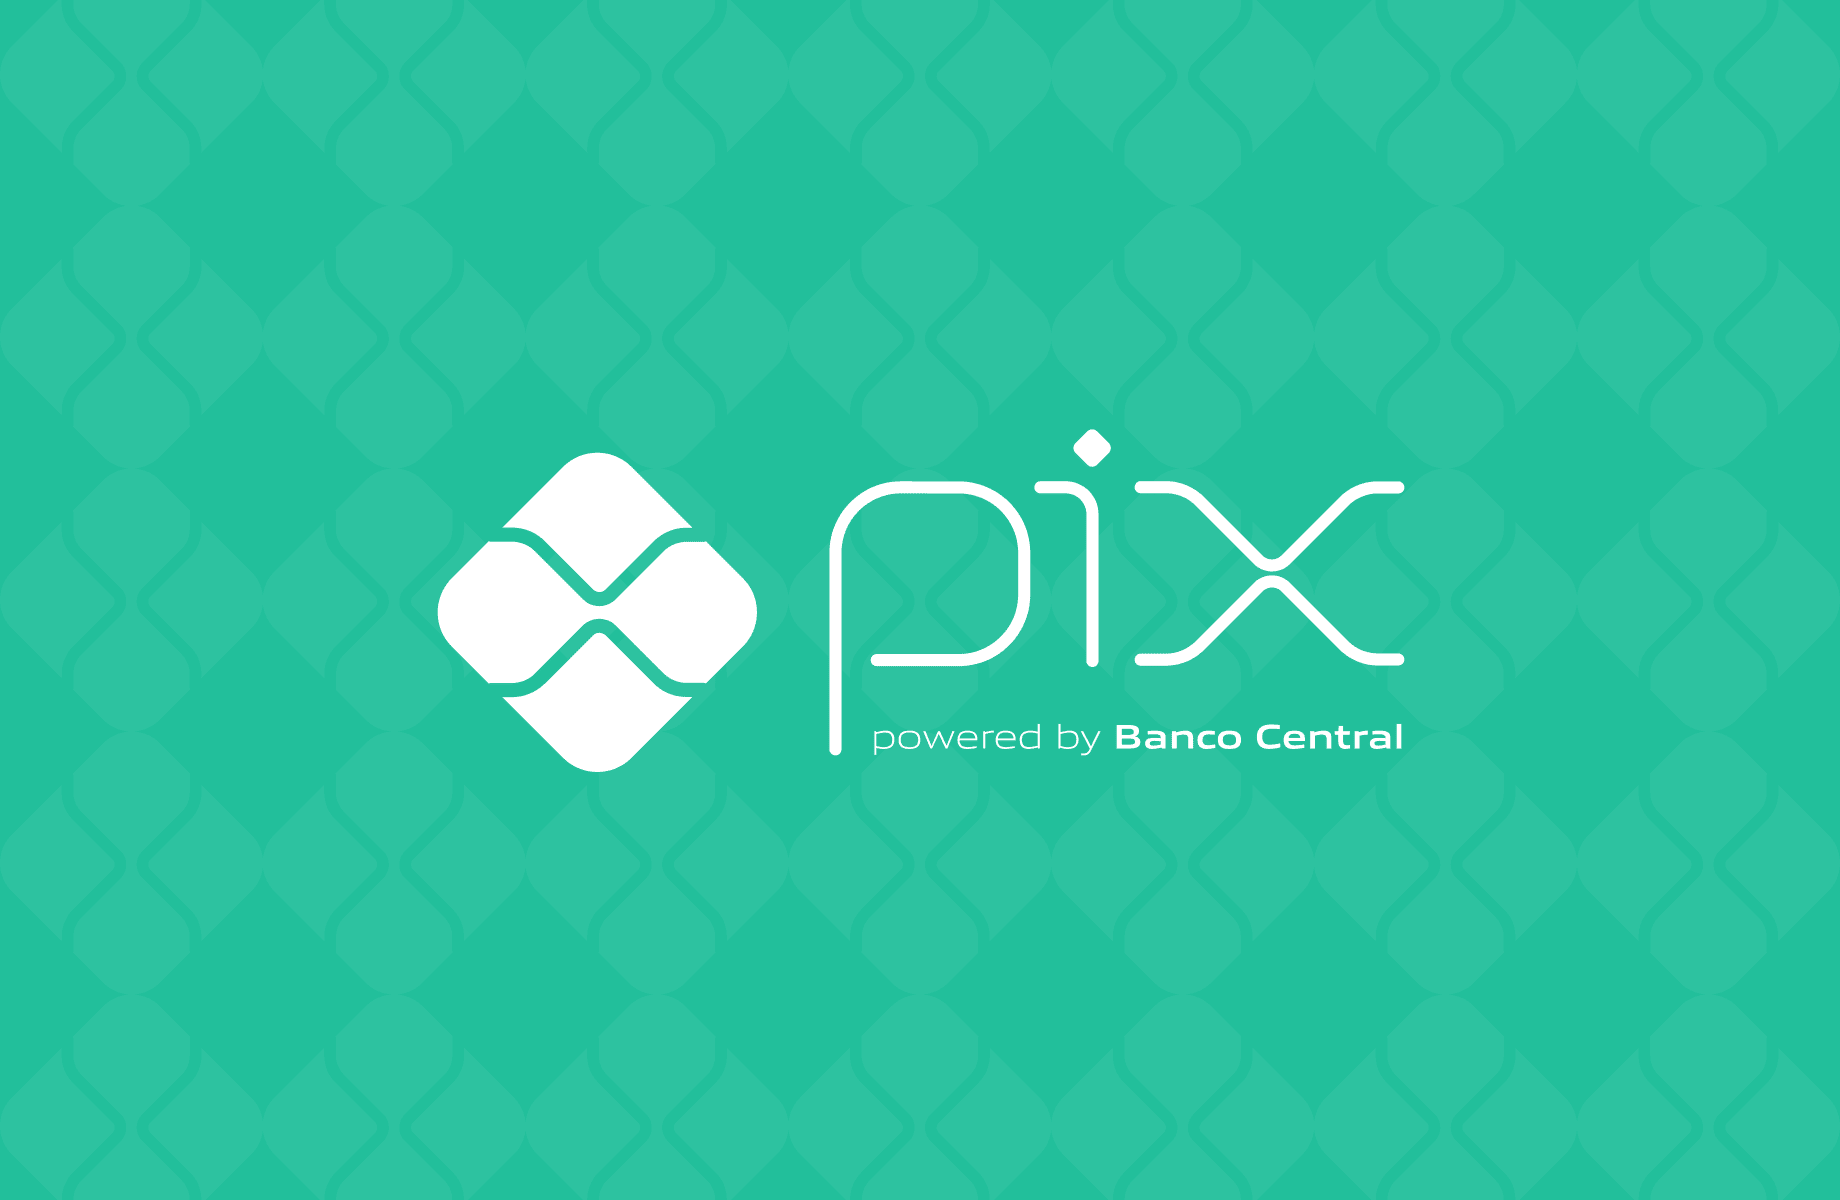 Parcelamento, débito automático e transações internacionais seguras: próximas fases do Pix